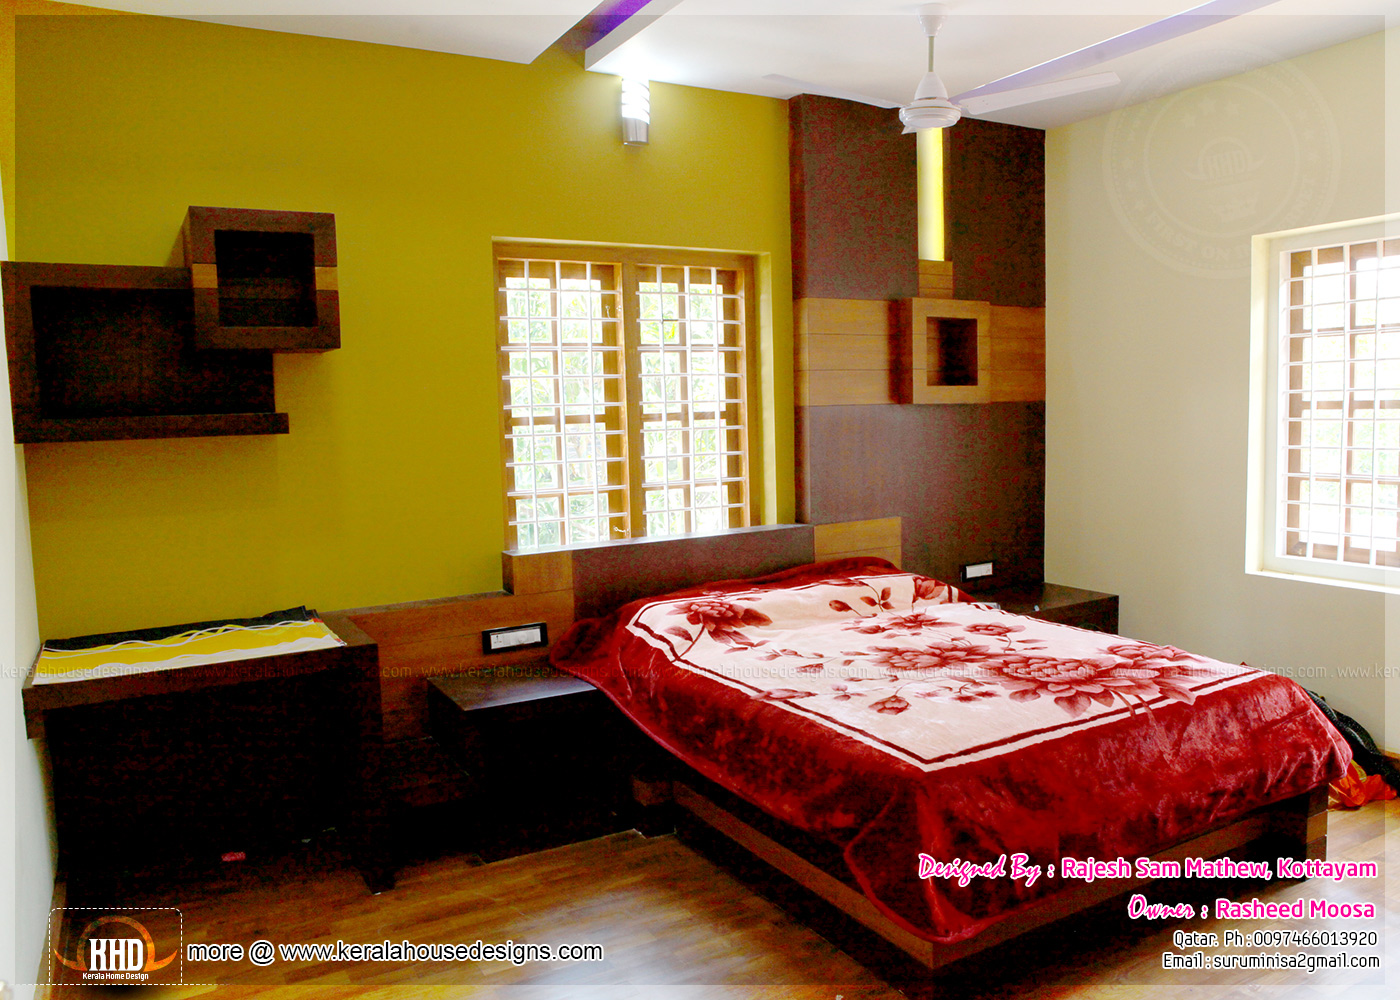 Kerala interior design with photos - Kerala home design ...